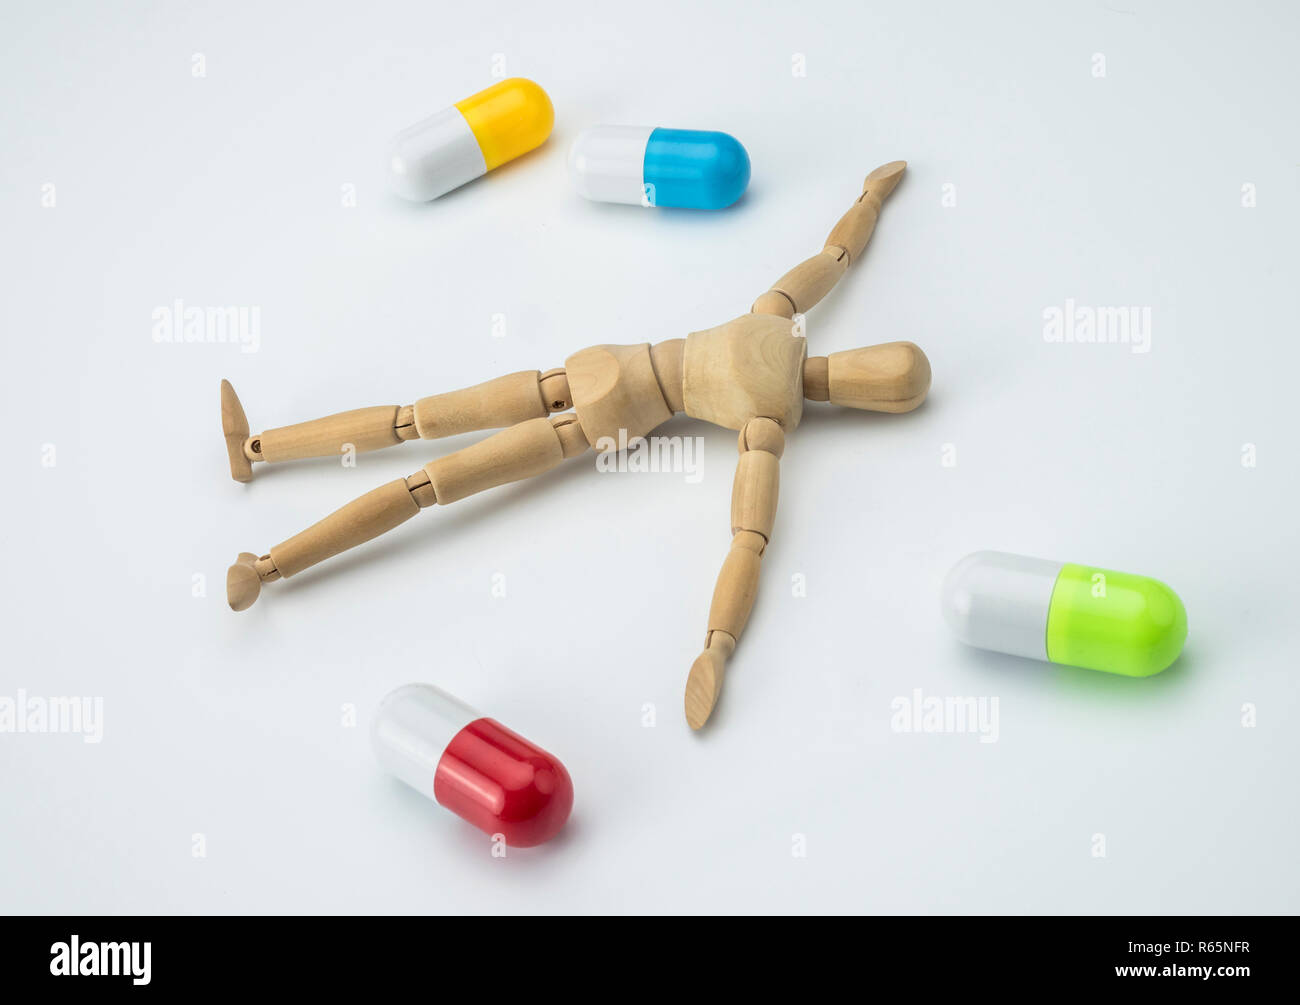 Articulé poupée est mort d'une overdose de somnifères, conceptual image Banque D'Images